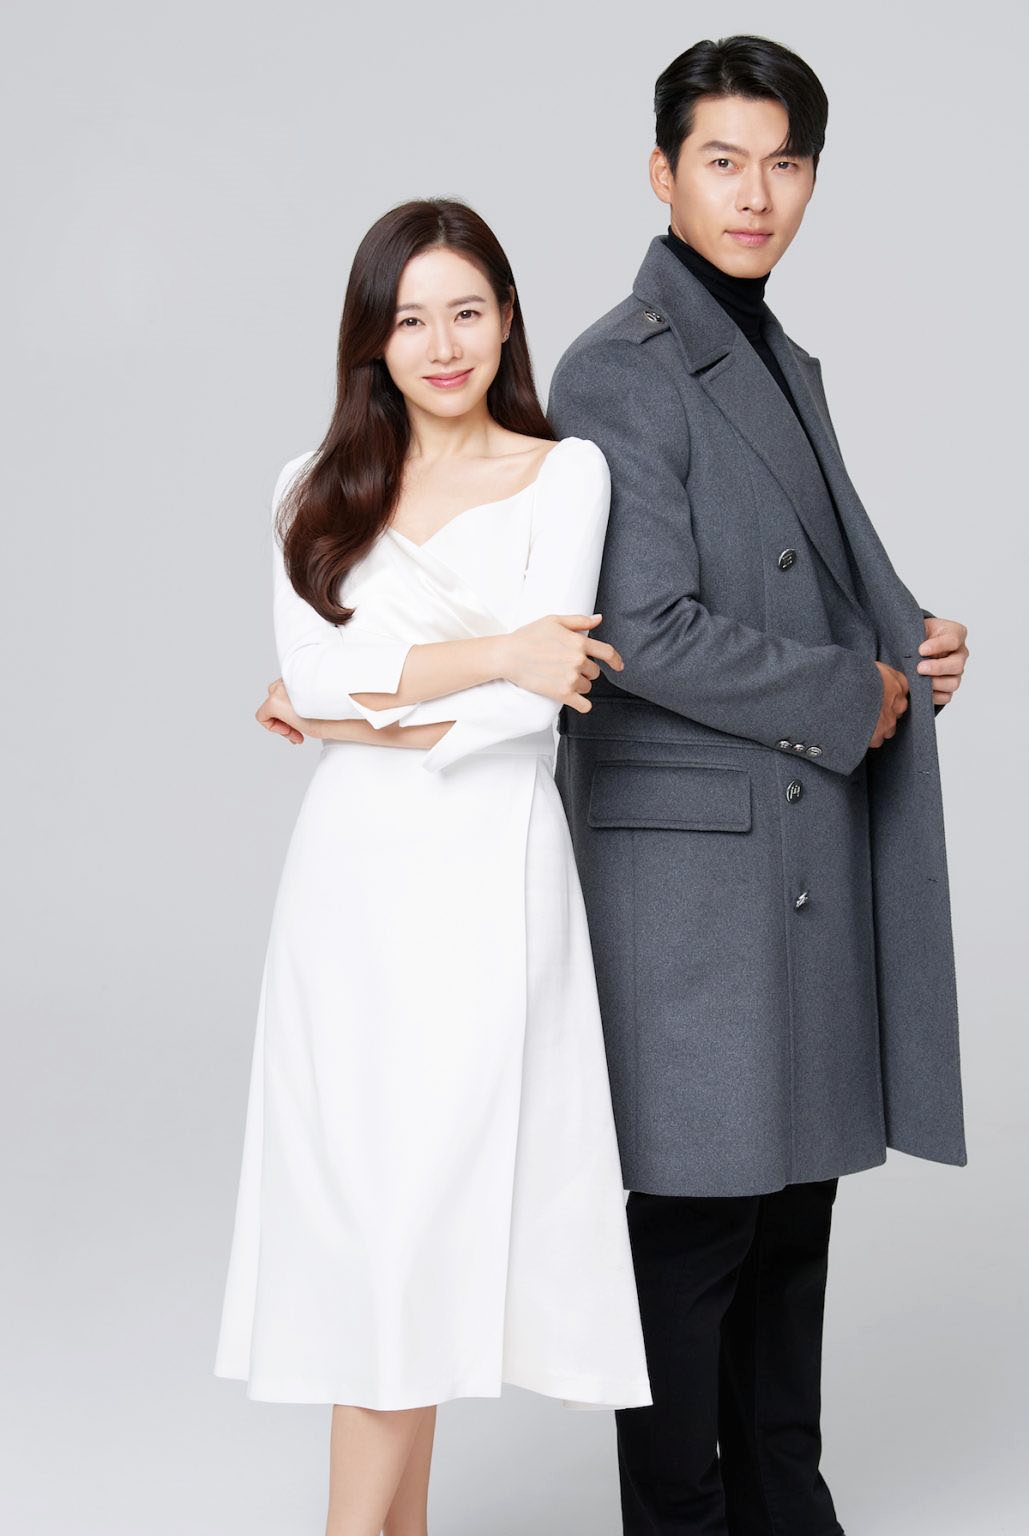 Dân tình hiện đang rất mong chờ đám cưới thế kỷ sắp tới của Hyun Bin và Son Ye Jin.